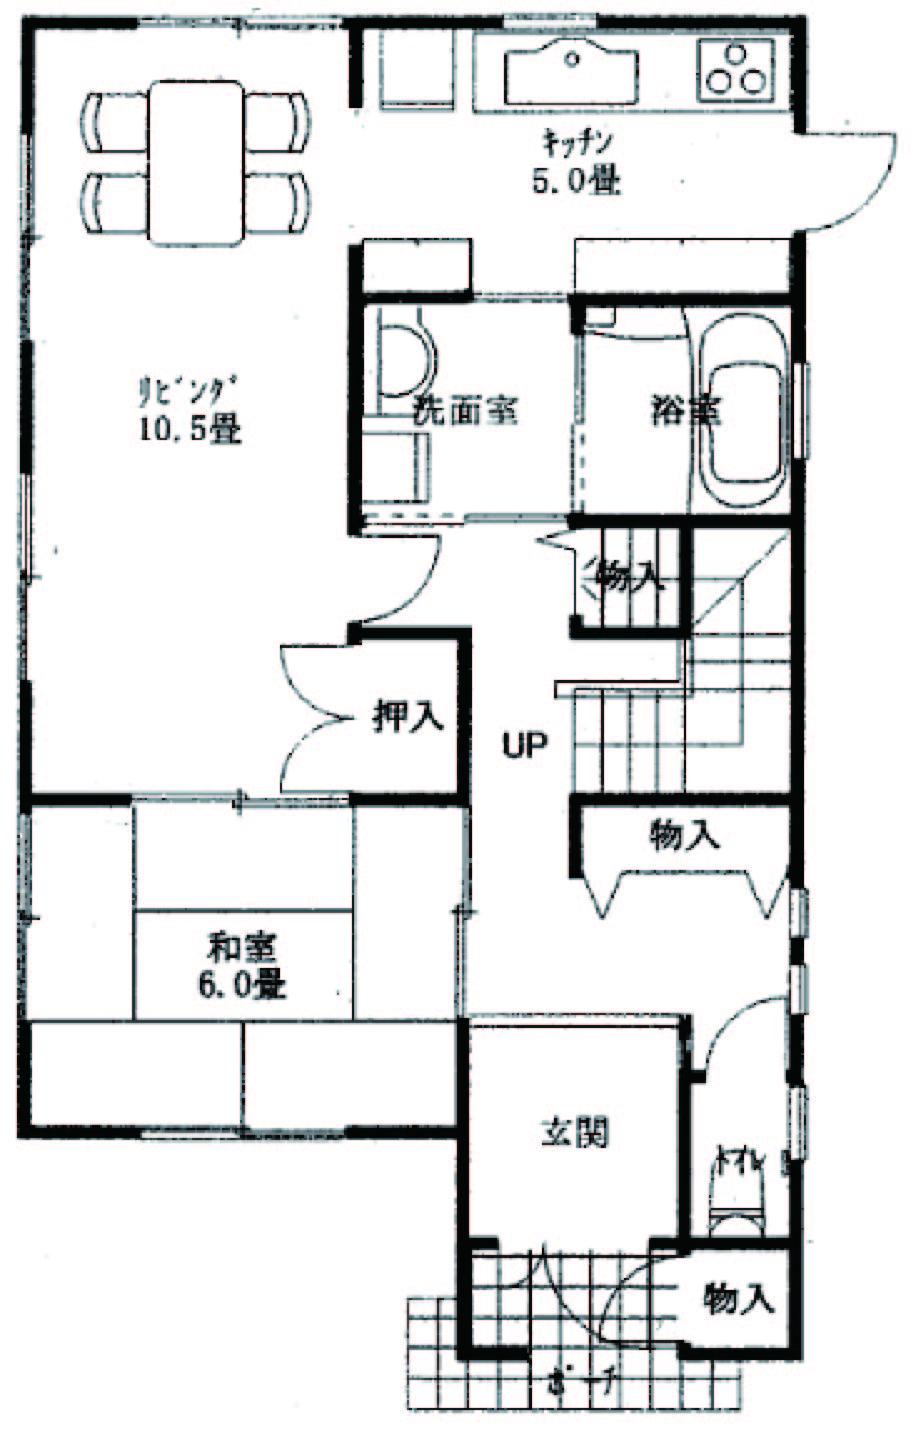 Floor plan. 25,800,000 yen, 4LDK, Land area 166.16 sq m , Building area 105.57 sq m 1 floor